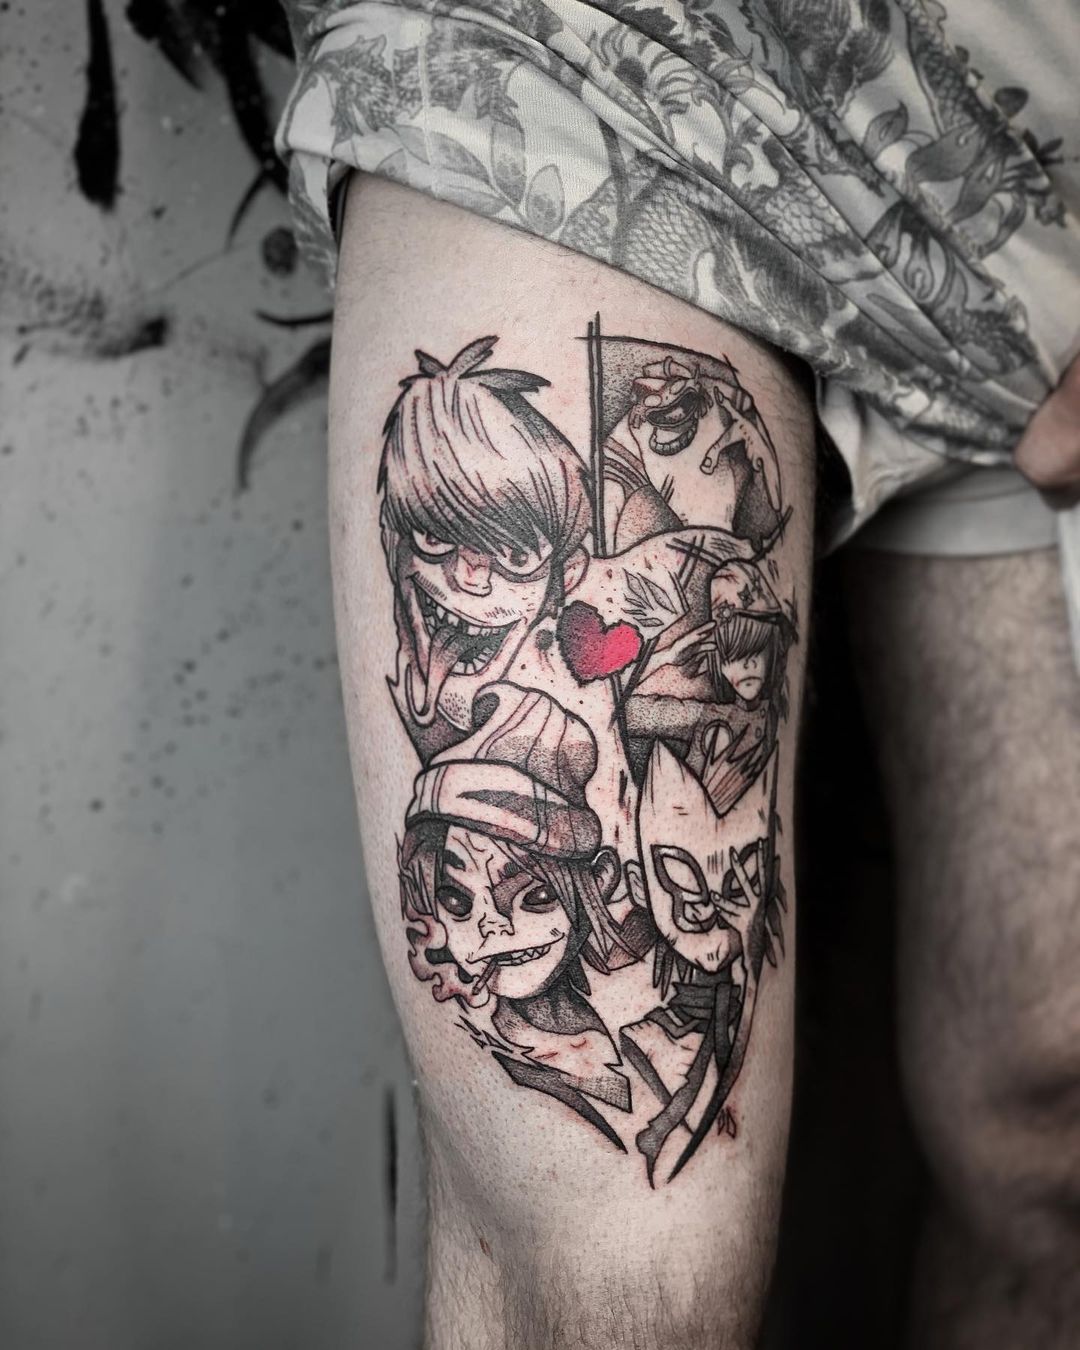 Tattoo Work - Dan Dunks Tattoo